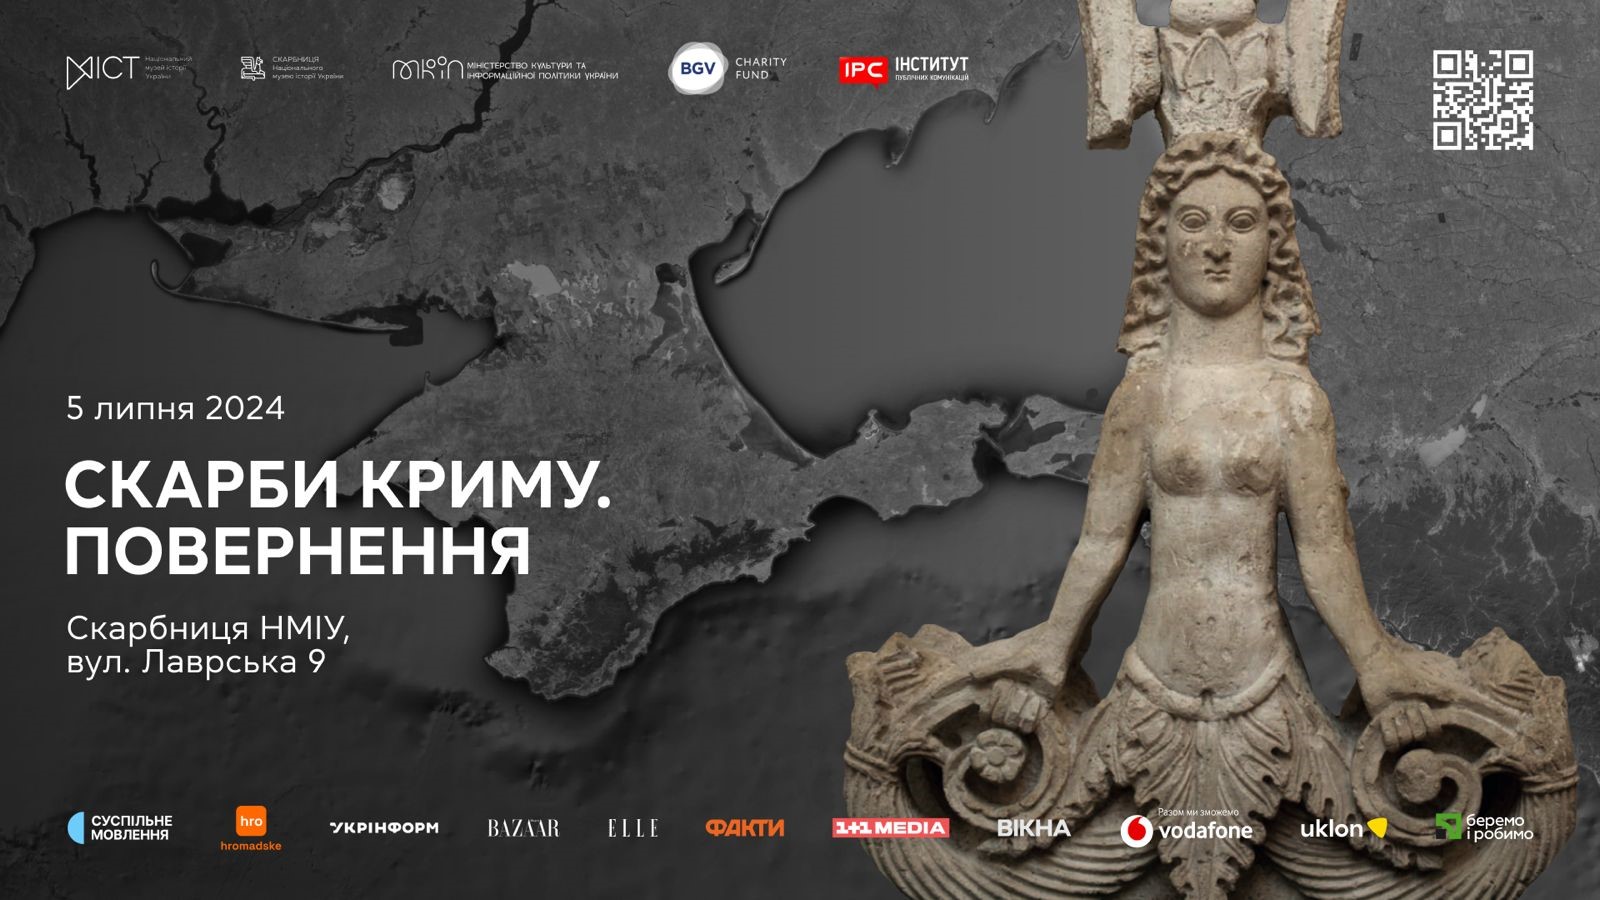 "Скифское золото" будет экспонироваться в Киеве до деоккупации Крыма